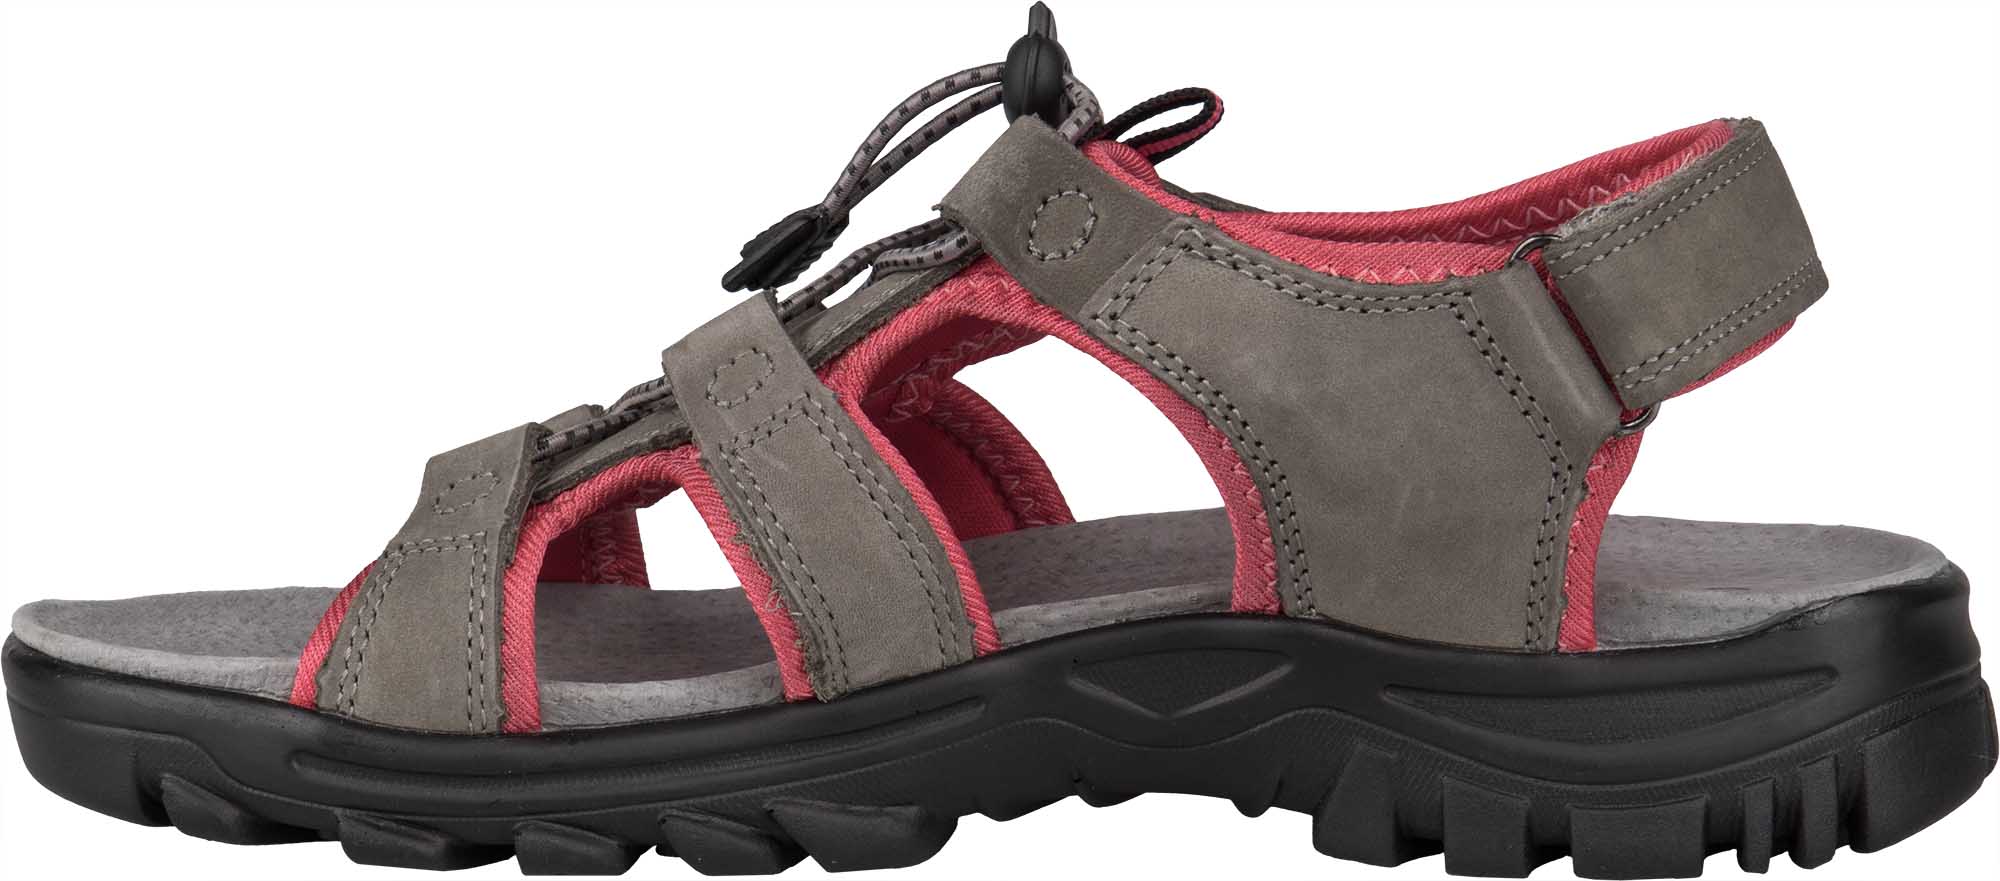 Women’s trekking sandals